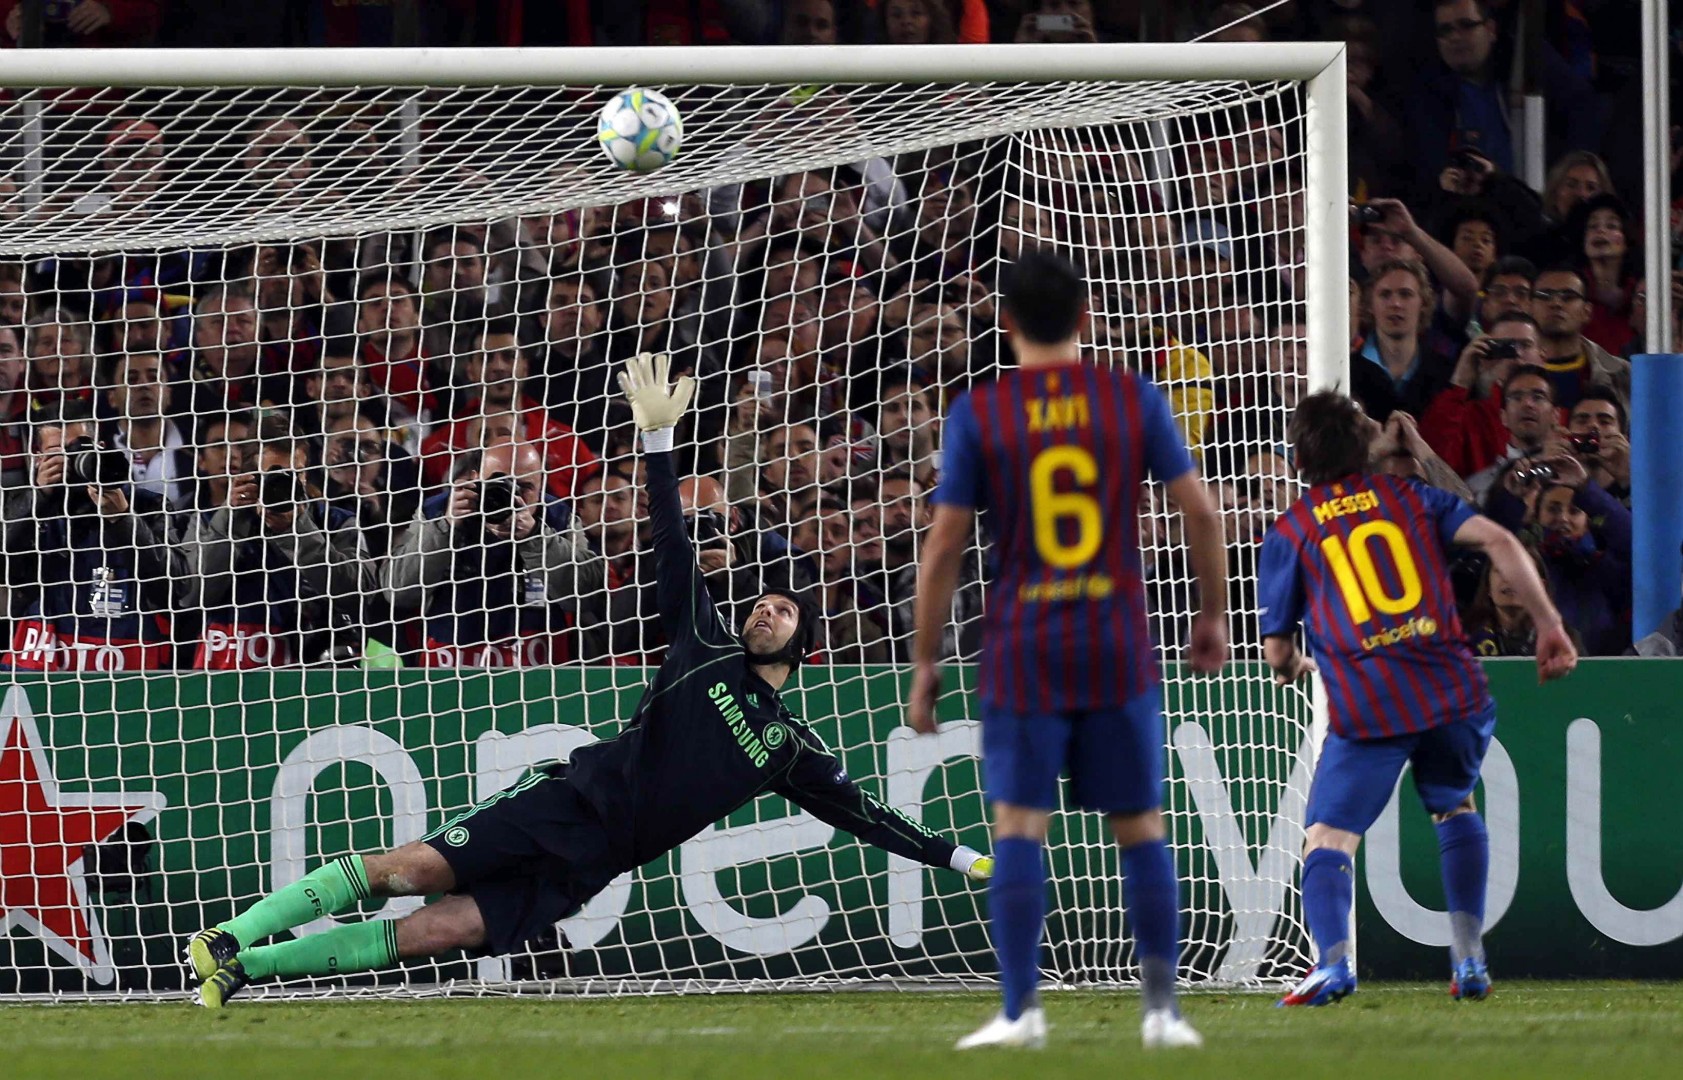 Messi še ni dosegel zadetka proti Petru Čechu, takole pa je tudi 24. aprila 2012 zgrešil enajstmetrovko (foto EPA).